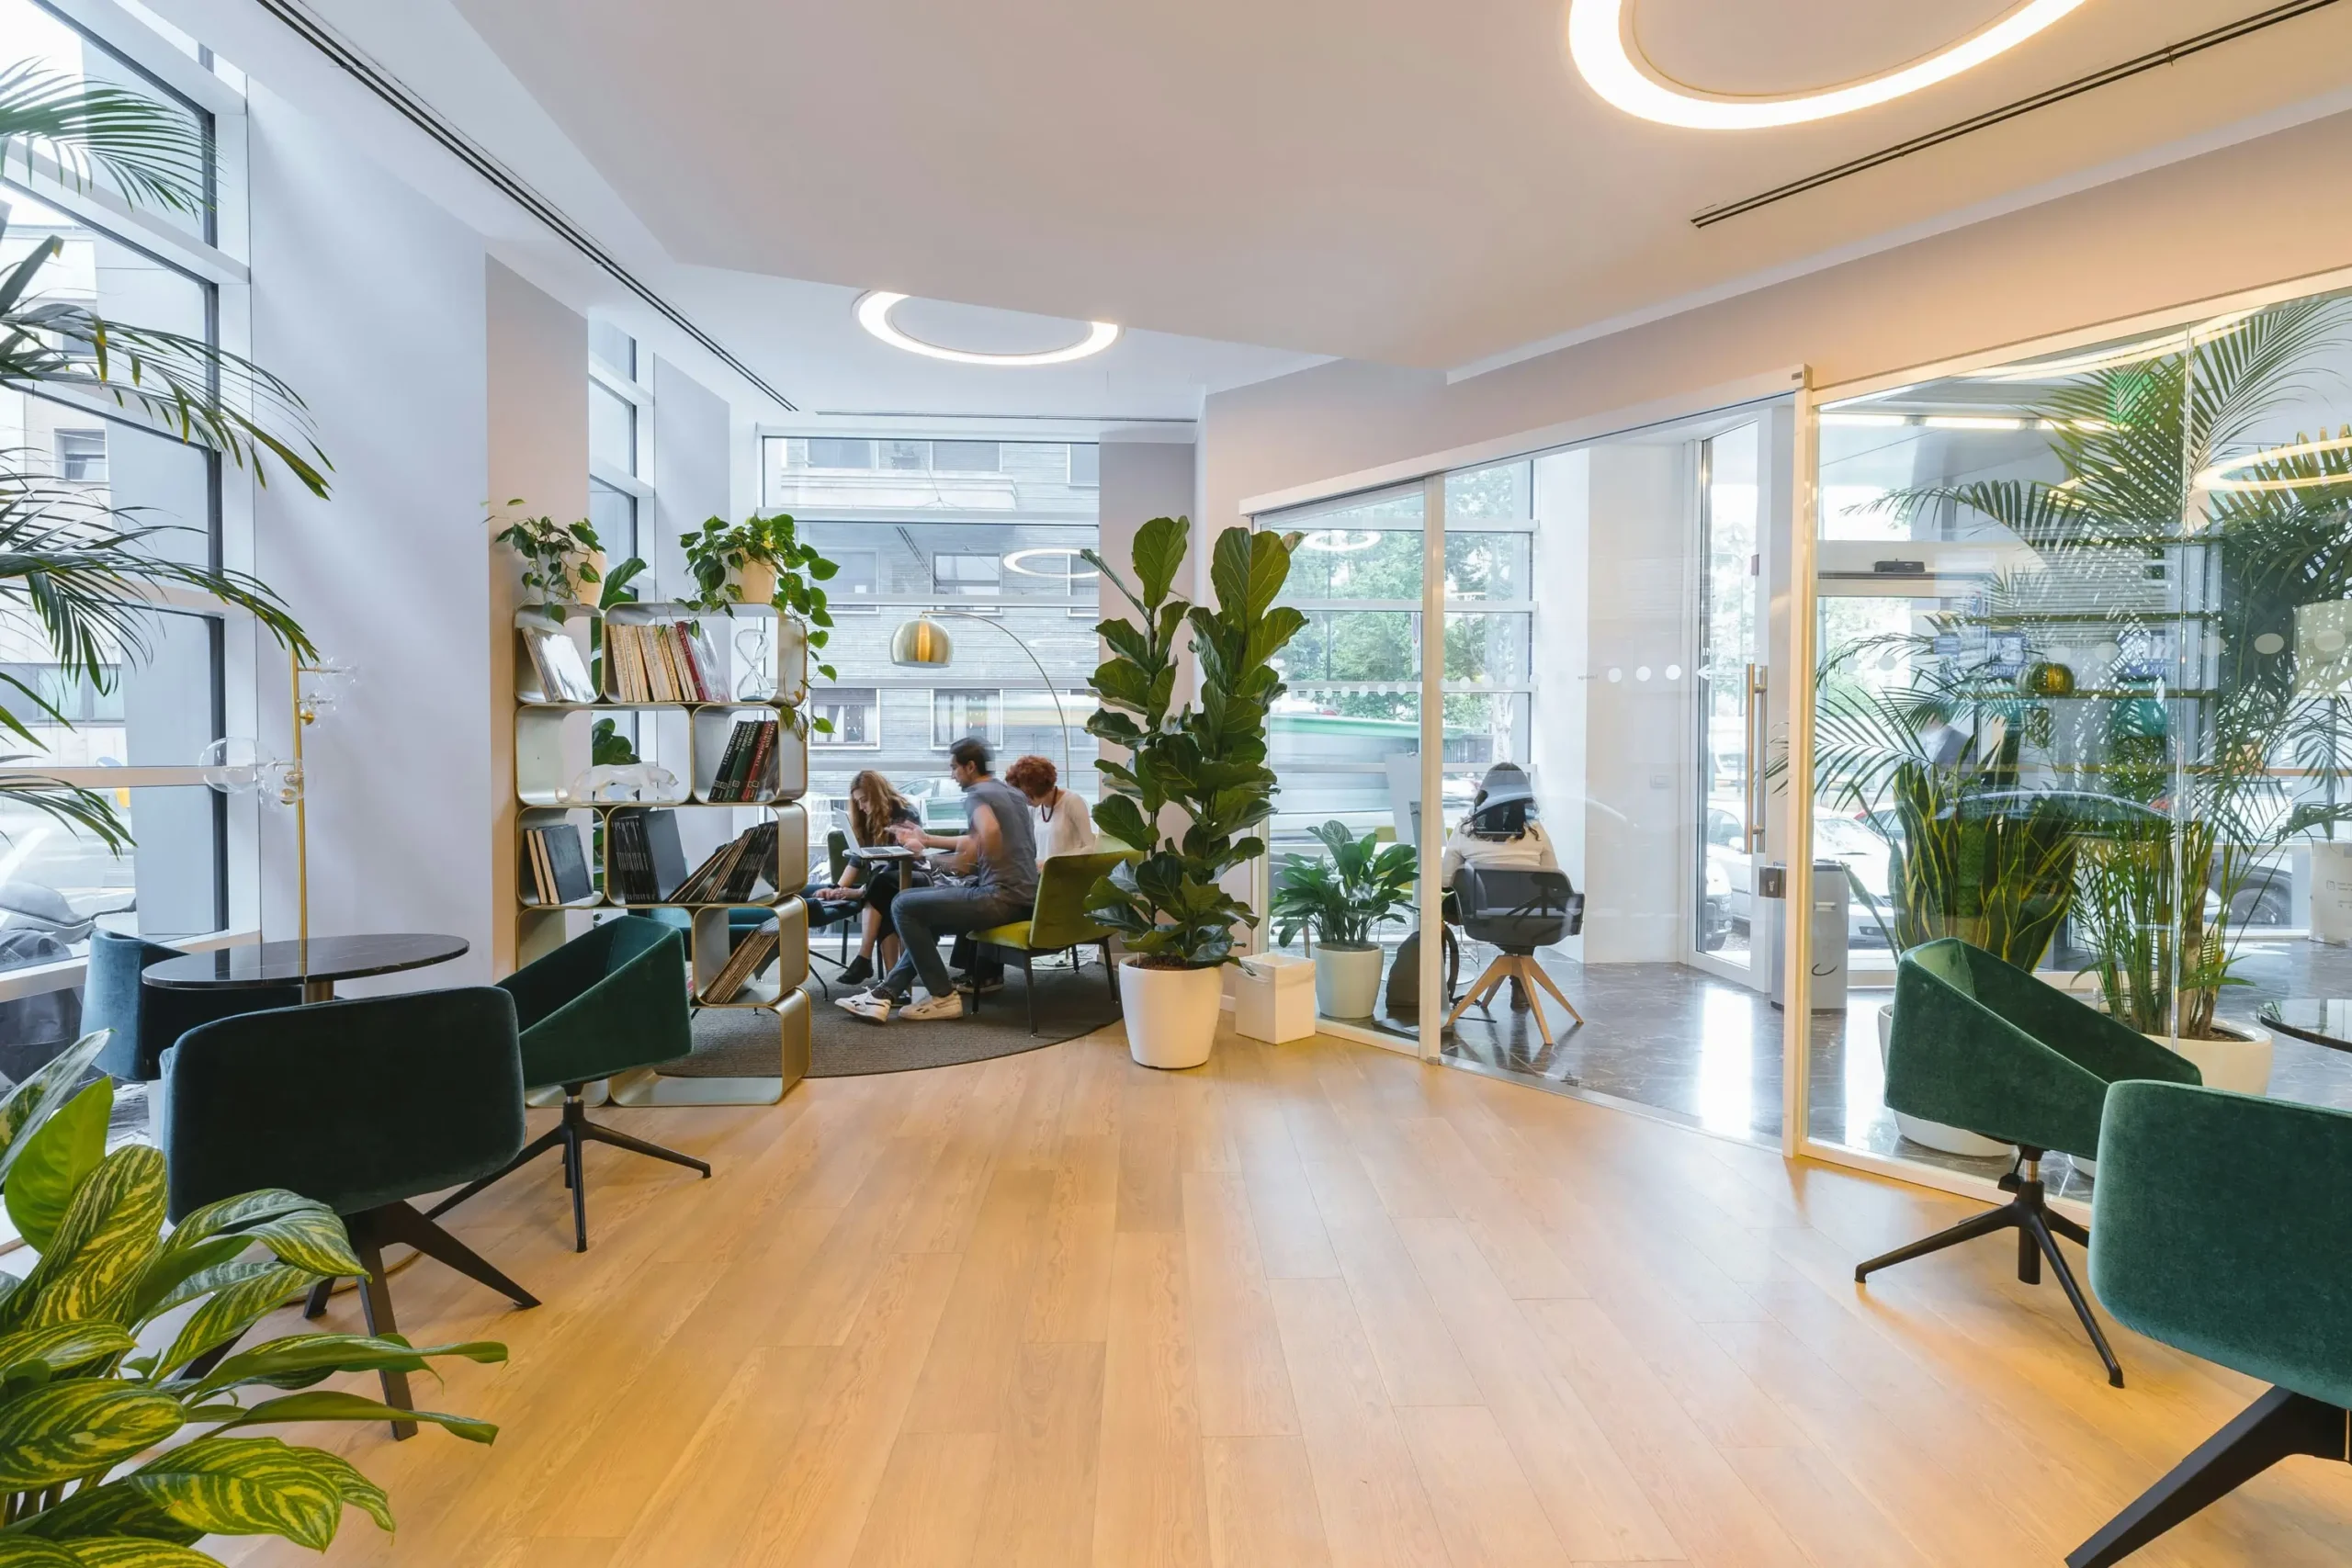 Helles, modernes Büro mit großen Fenstern, grünen Pflanzen und Menschen, die an Tischen zusammenarbeiten.